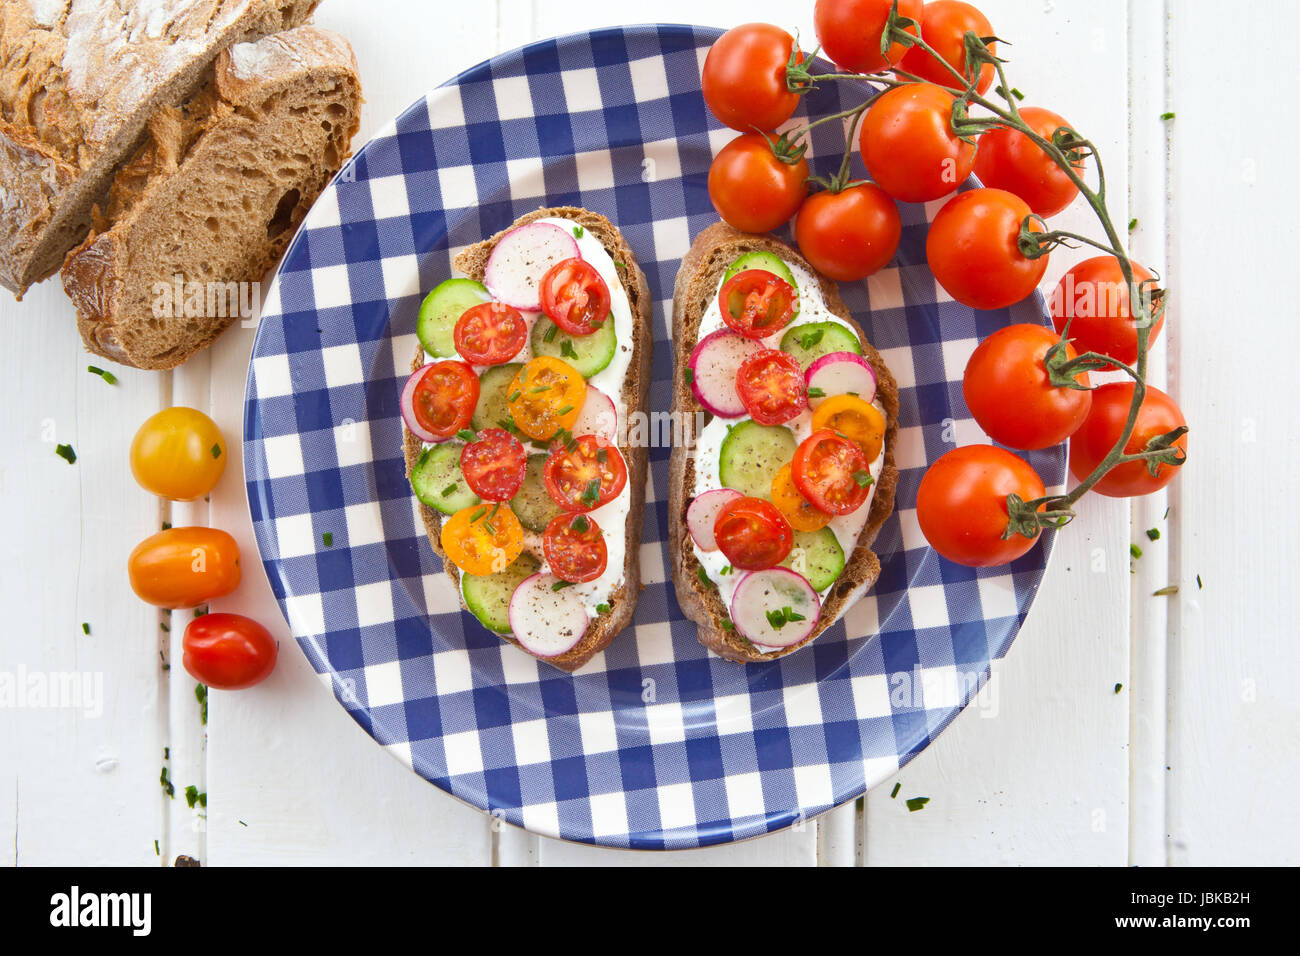 Brot mit Quark und frischen Tomaten, Gurken und Radieschen Stock Photo ...